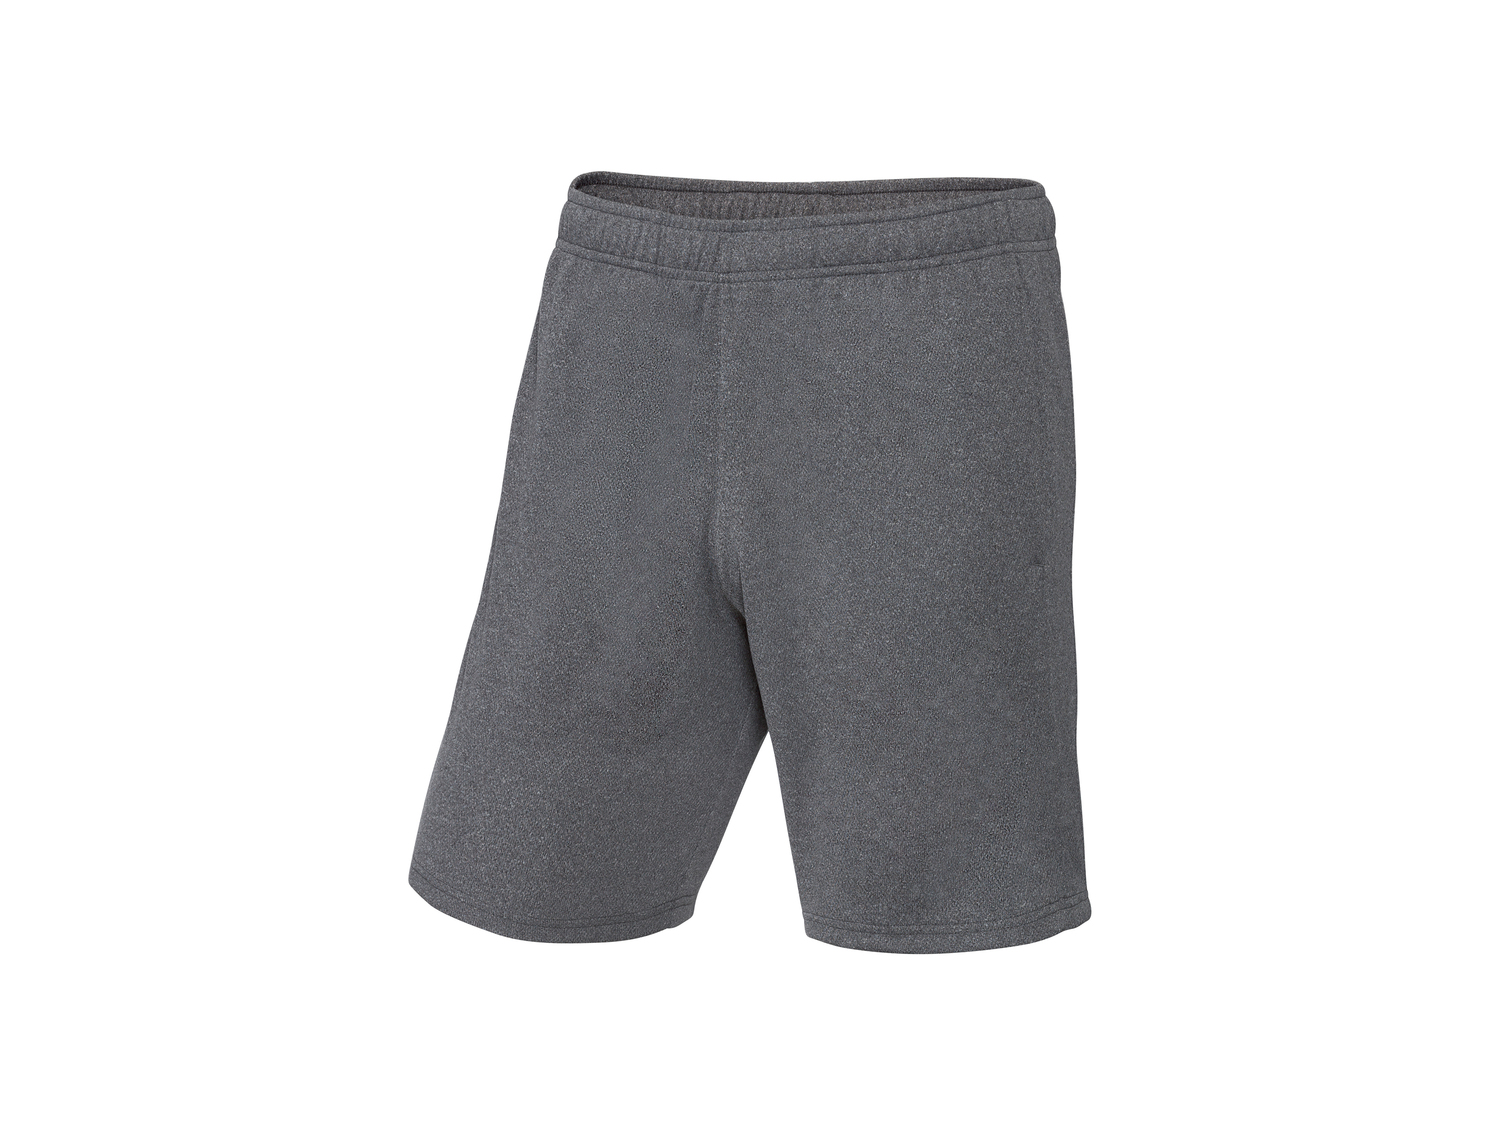 Shorts sportivi da uomo Crivit, prezzo 5.99 &#8364; 
Misure: S-XL
Taglie disponibili

Caratteristiche

- ...